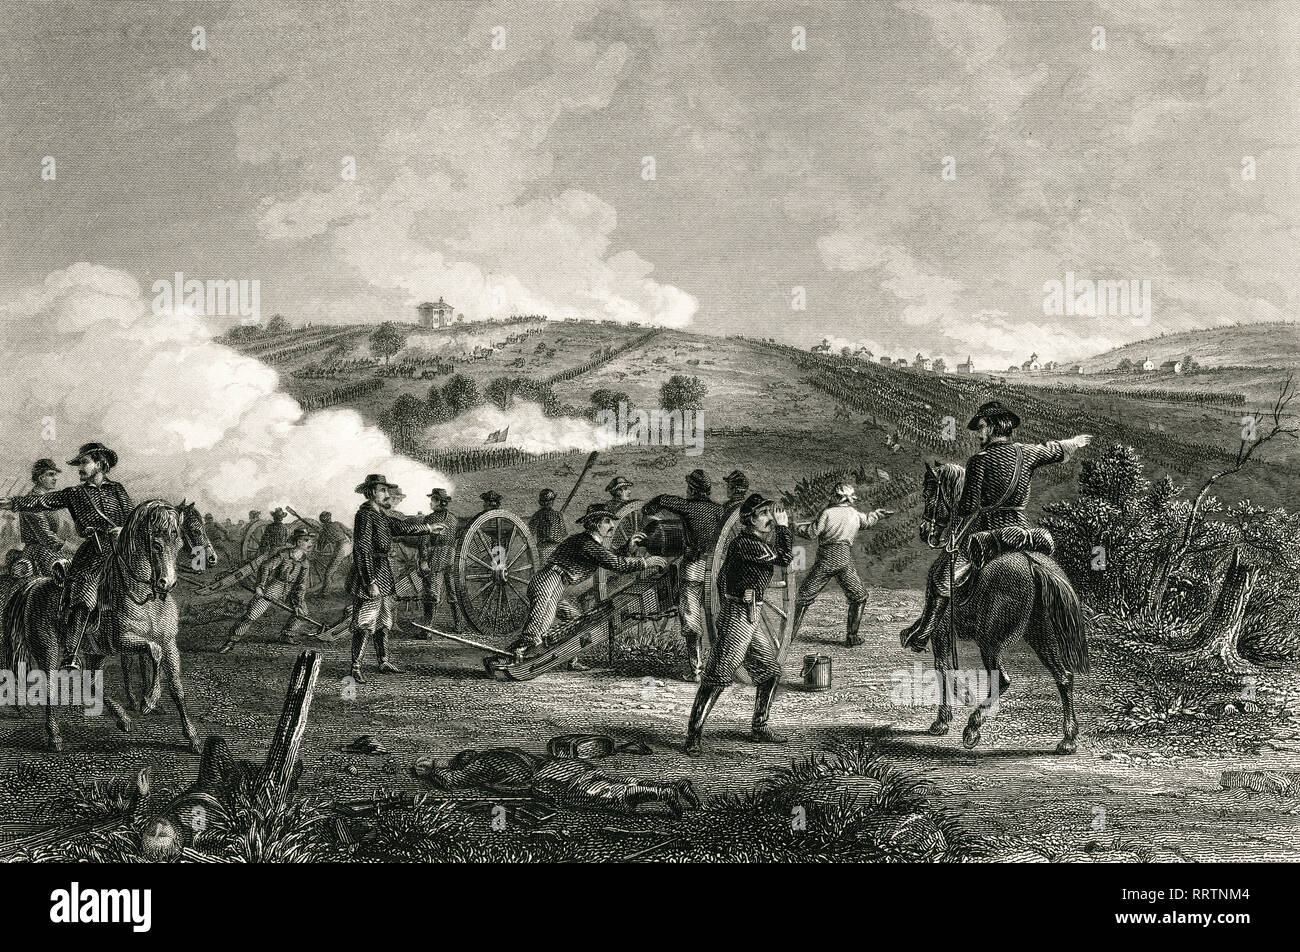 Amerikanischer Bürgerkrieg, Schlacht von Gettysburg, PA. Stahlstich von J.R. Chapin, 1865 Stockfoto